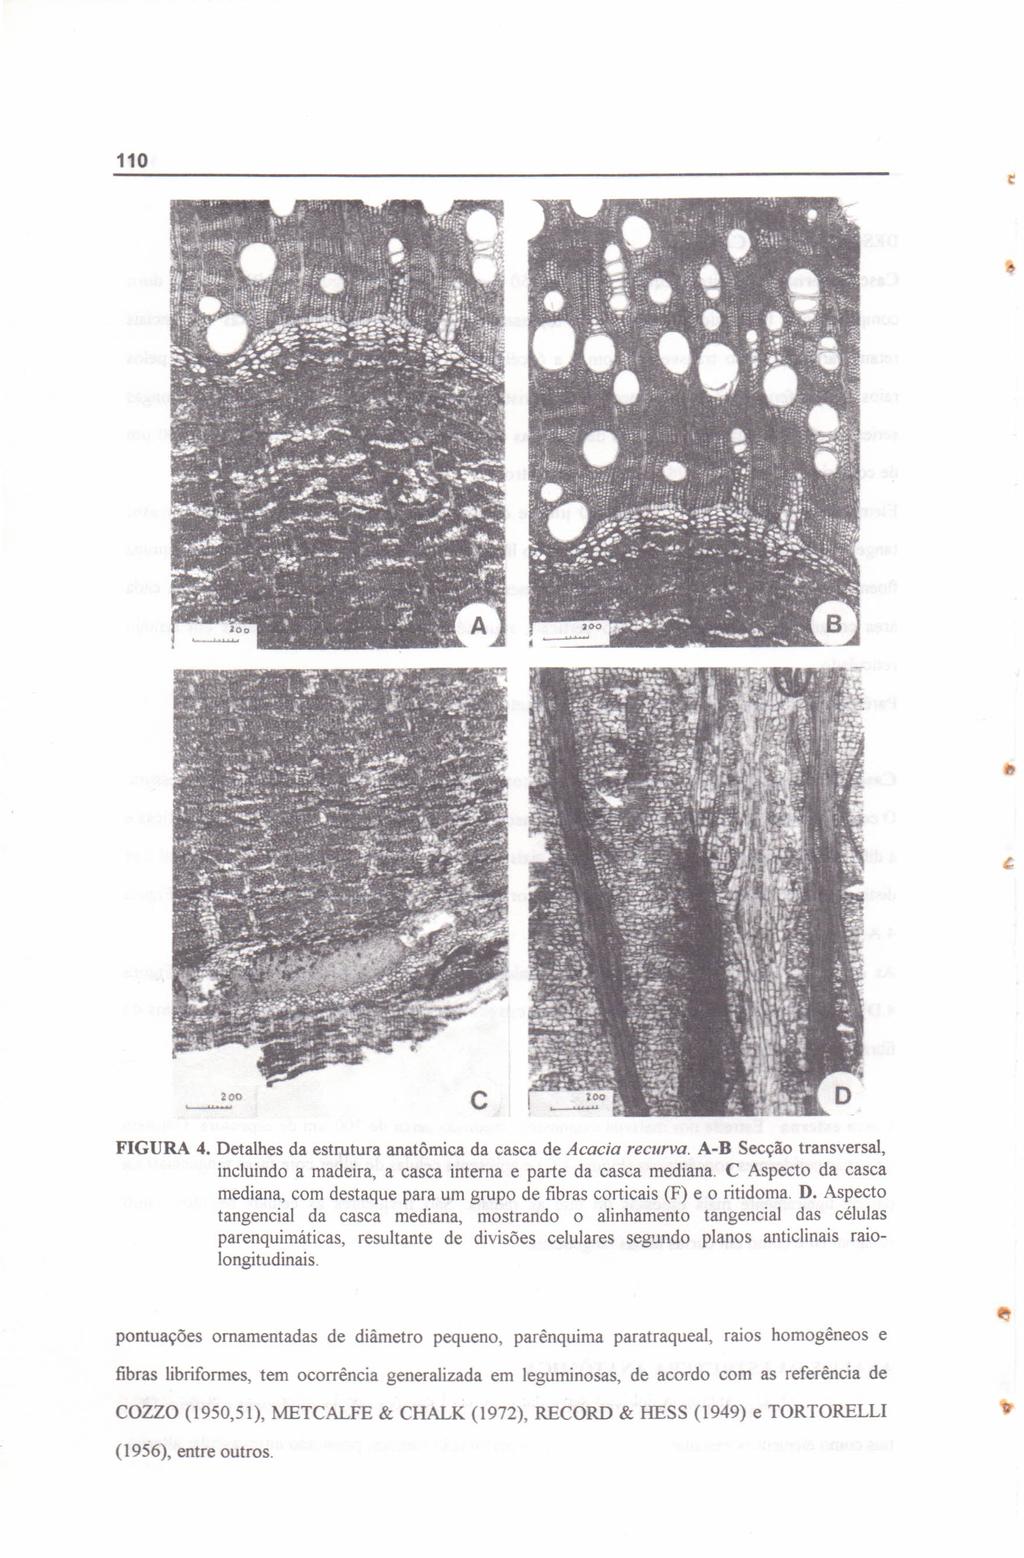 FIGURA 4. Detalhes da estrutura anatõmica da casca de Acacia recurva. A-B Secção transversal, incluindo a madeira, a casca interna e parte da casca mediana.